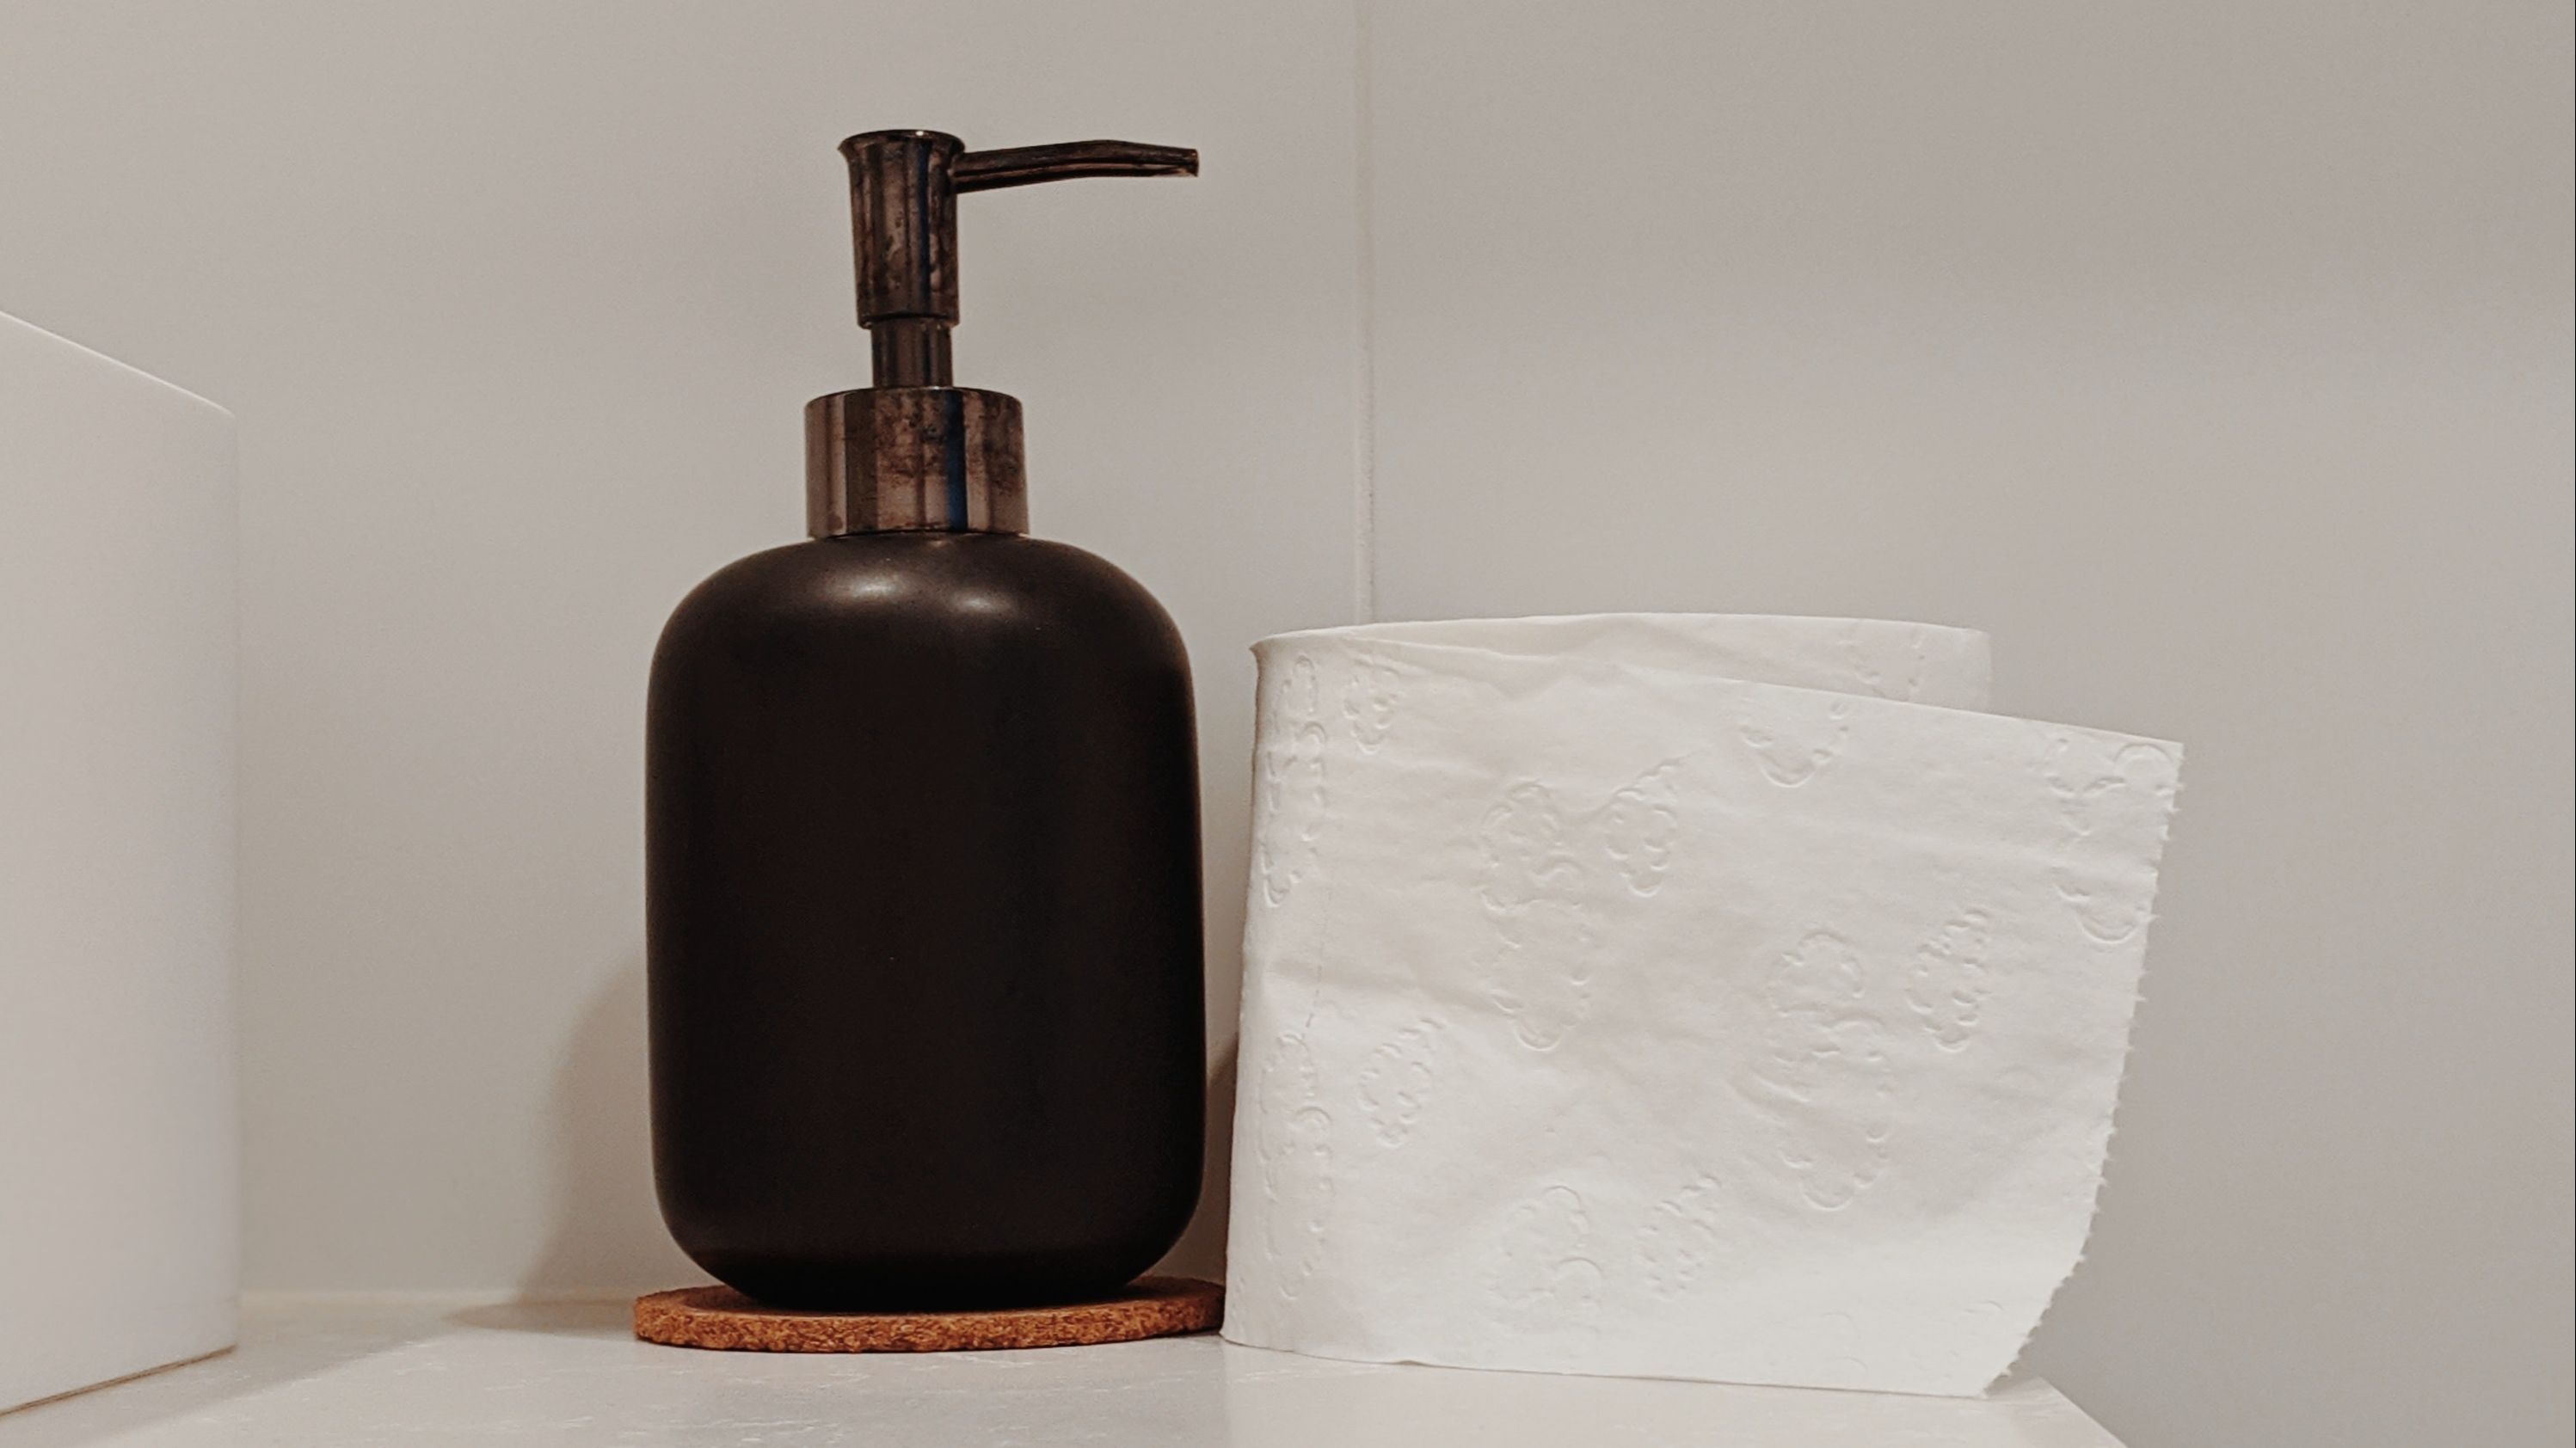 Los mejores tips para elegir el papel higiénico ideal para tu hogar y cómo  ahorrar en su uso, Trucos caseros, RESPUESTAS